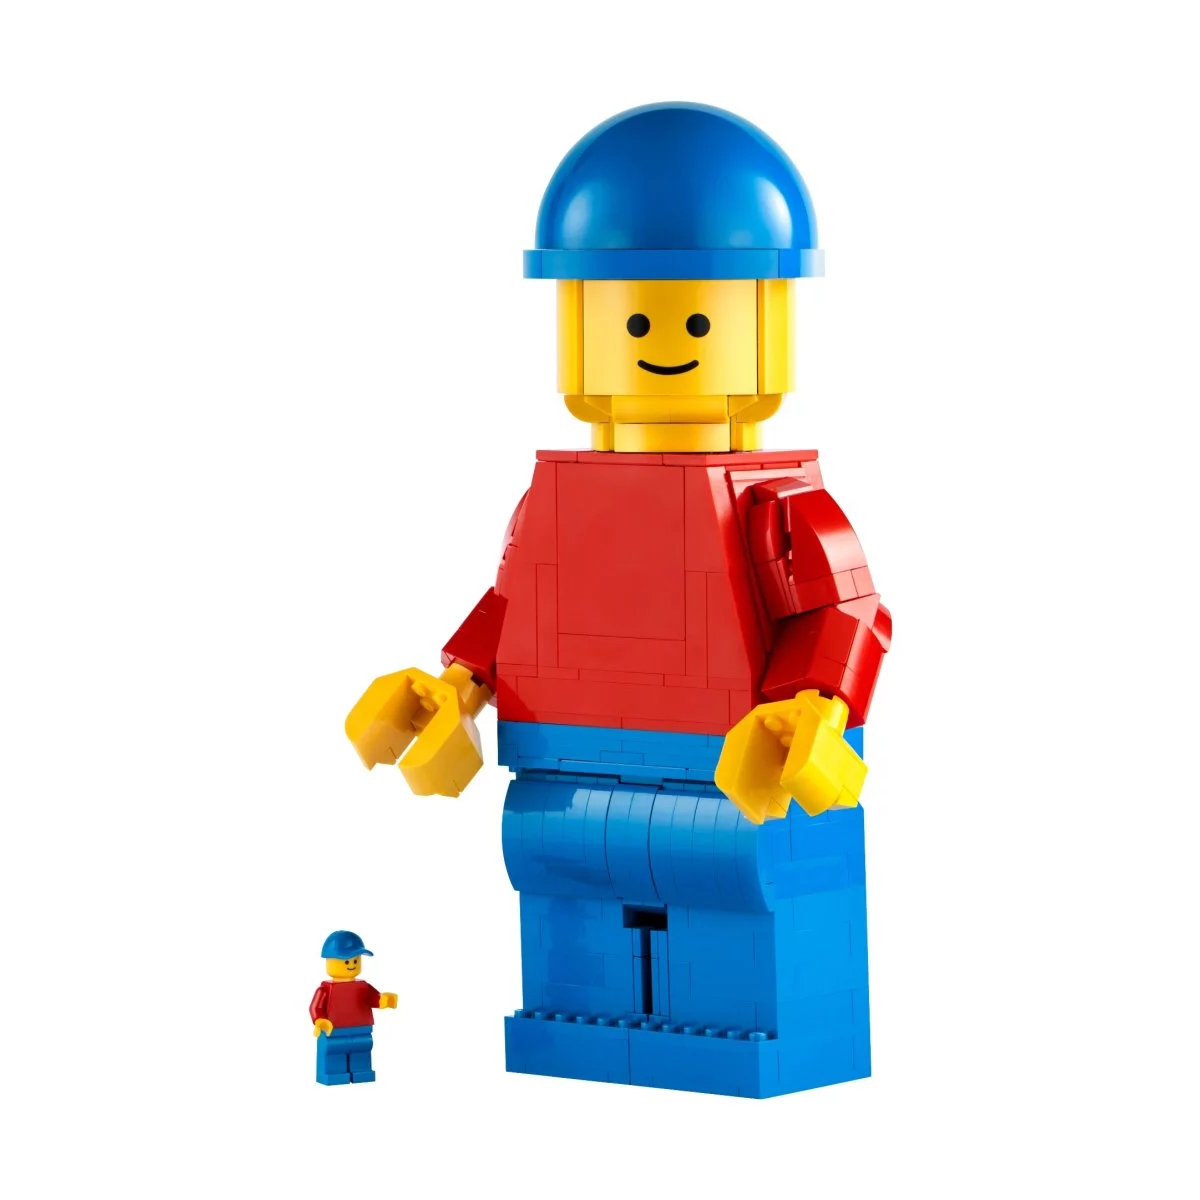 Конструктор Lego Minifigures Up-Scaled LEGO Minifigure 40649, 654 детали конструктор lego holiday 5004468 пасхальная минифигурка